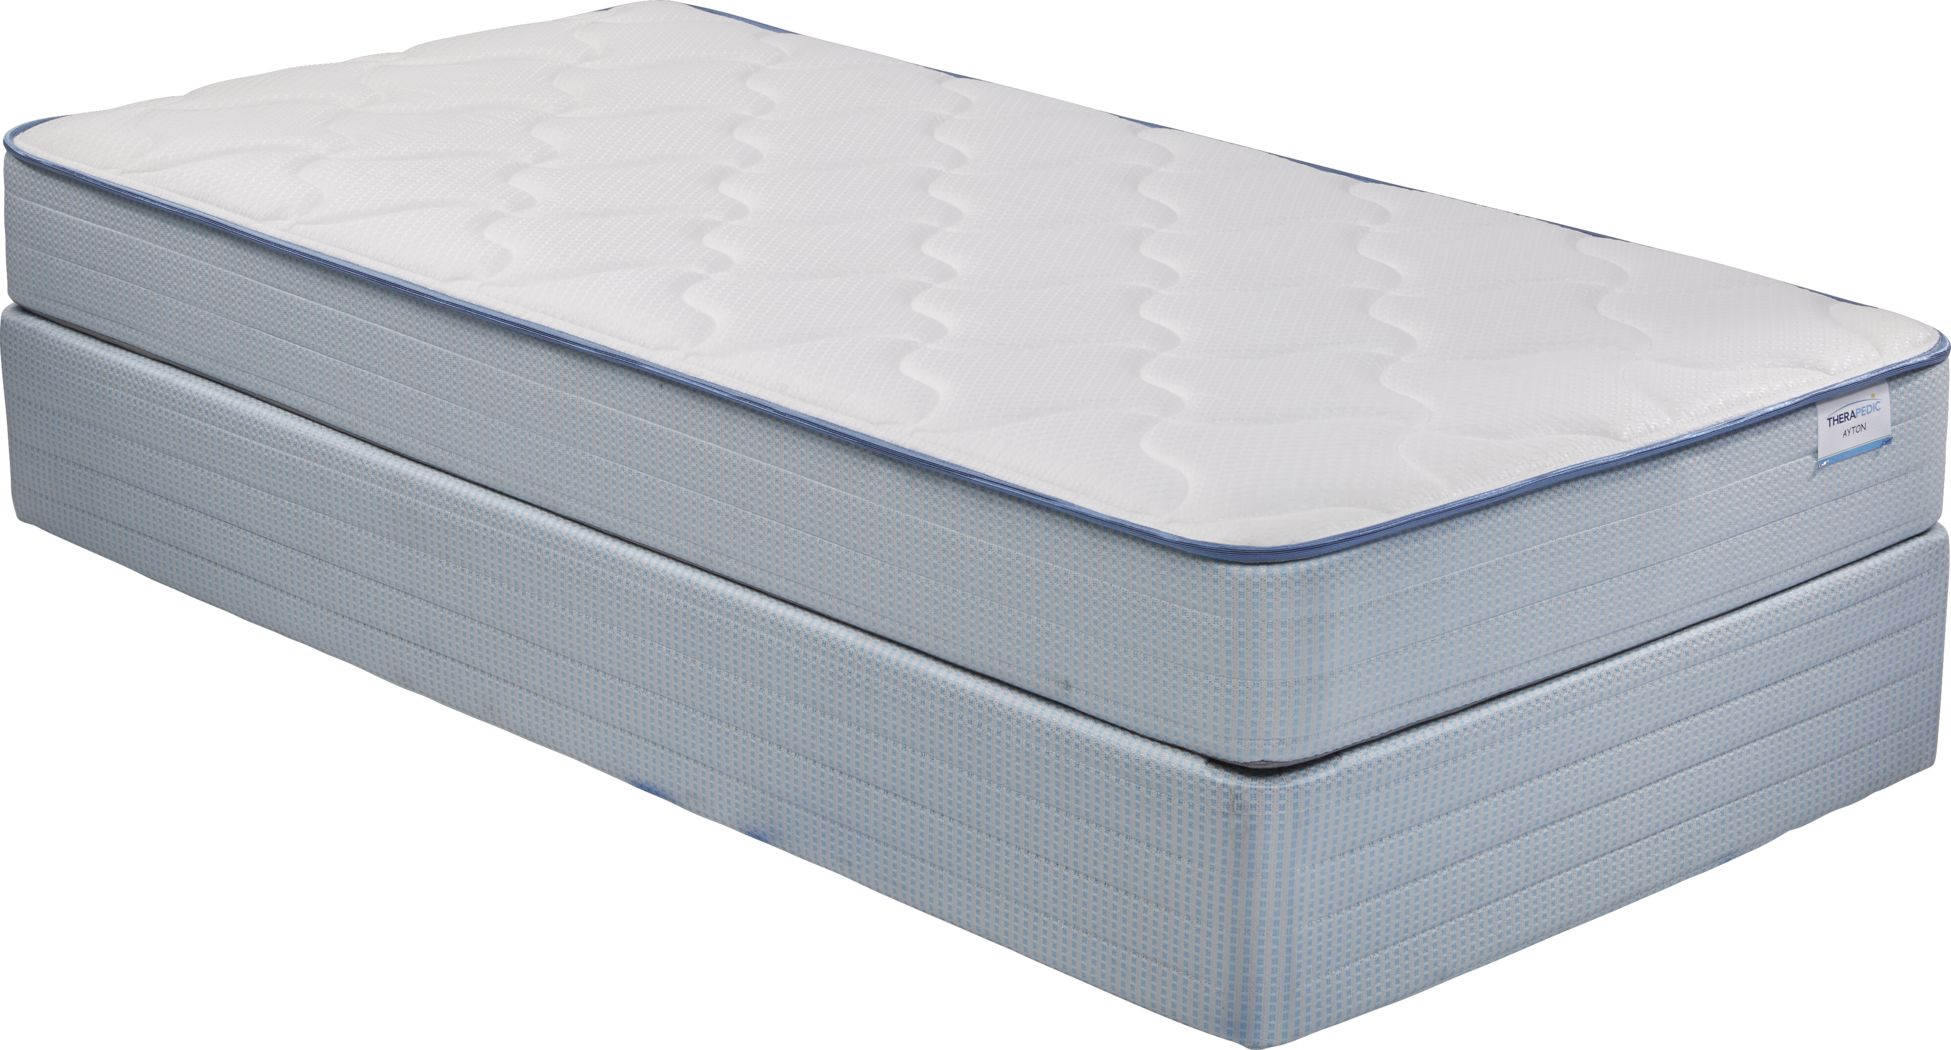 overstock twin mattress sets